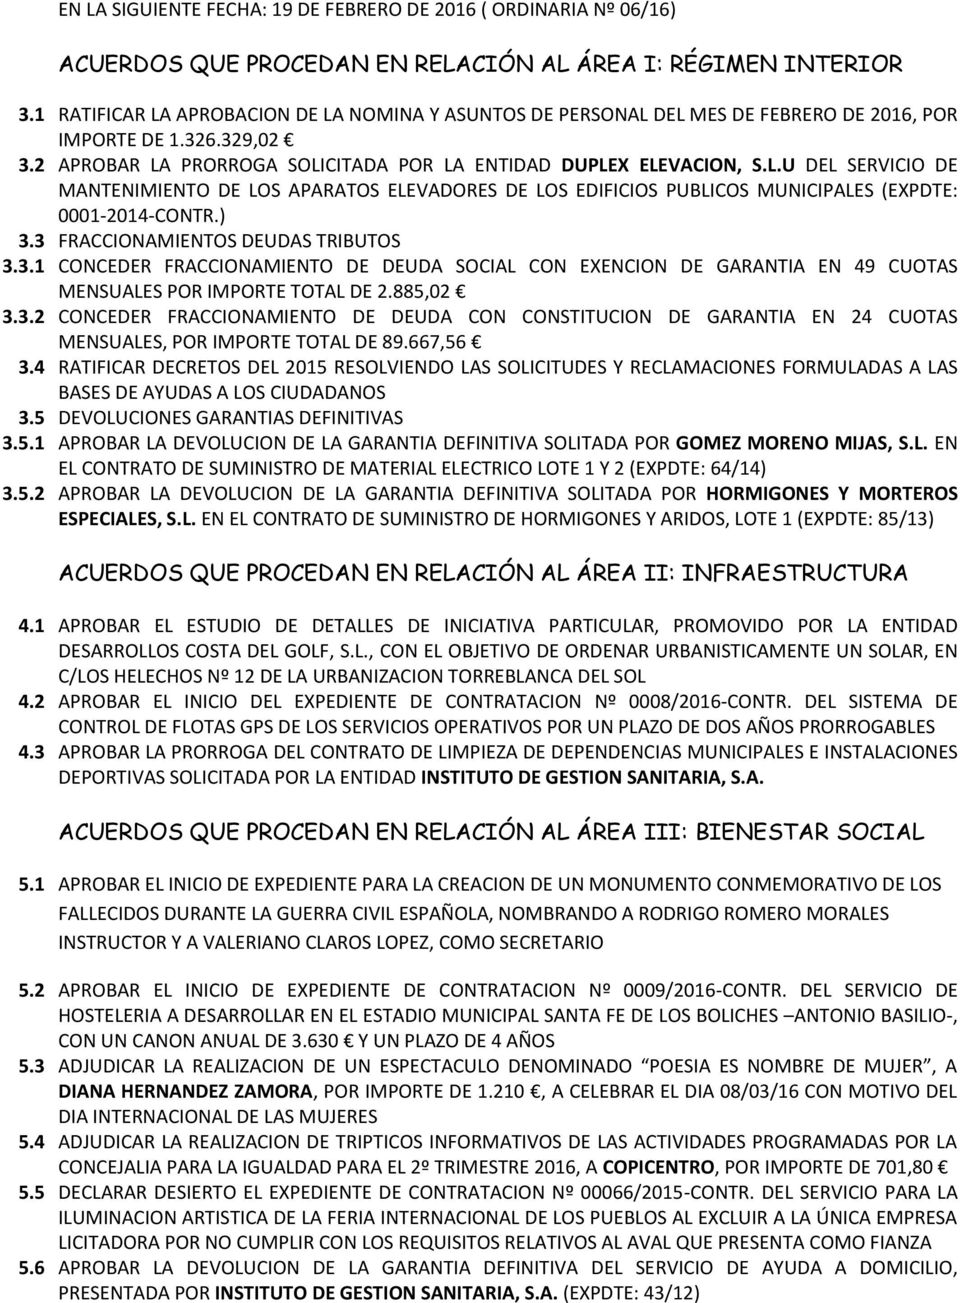 3 FRACCIONAMIENTOS DEUDAS TRIBUTOS 3.3.1 CONCEDER FRACCIONAMIENTO DE DEUDA SOCIAL CON EXENCION DE GARANTIA EN 49 CUOTAS MENSUALES POR IMPORTE TOTAL DE 2.885,02 3.3.2 CONCEDER FRACCIONAMIENTO DE DEUDA CON CONSTITUCION DE GARANTIA EN 24 CUOTAS MENSUALES, POR IMPORTE TOTAL DE 89.